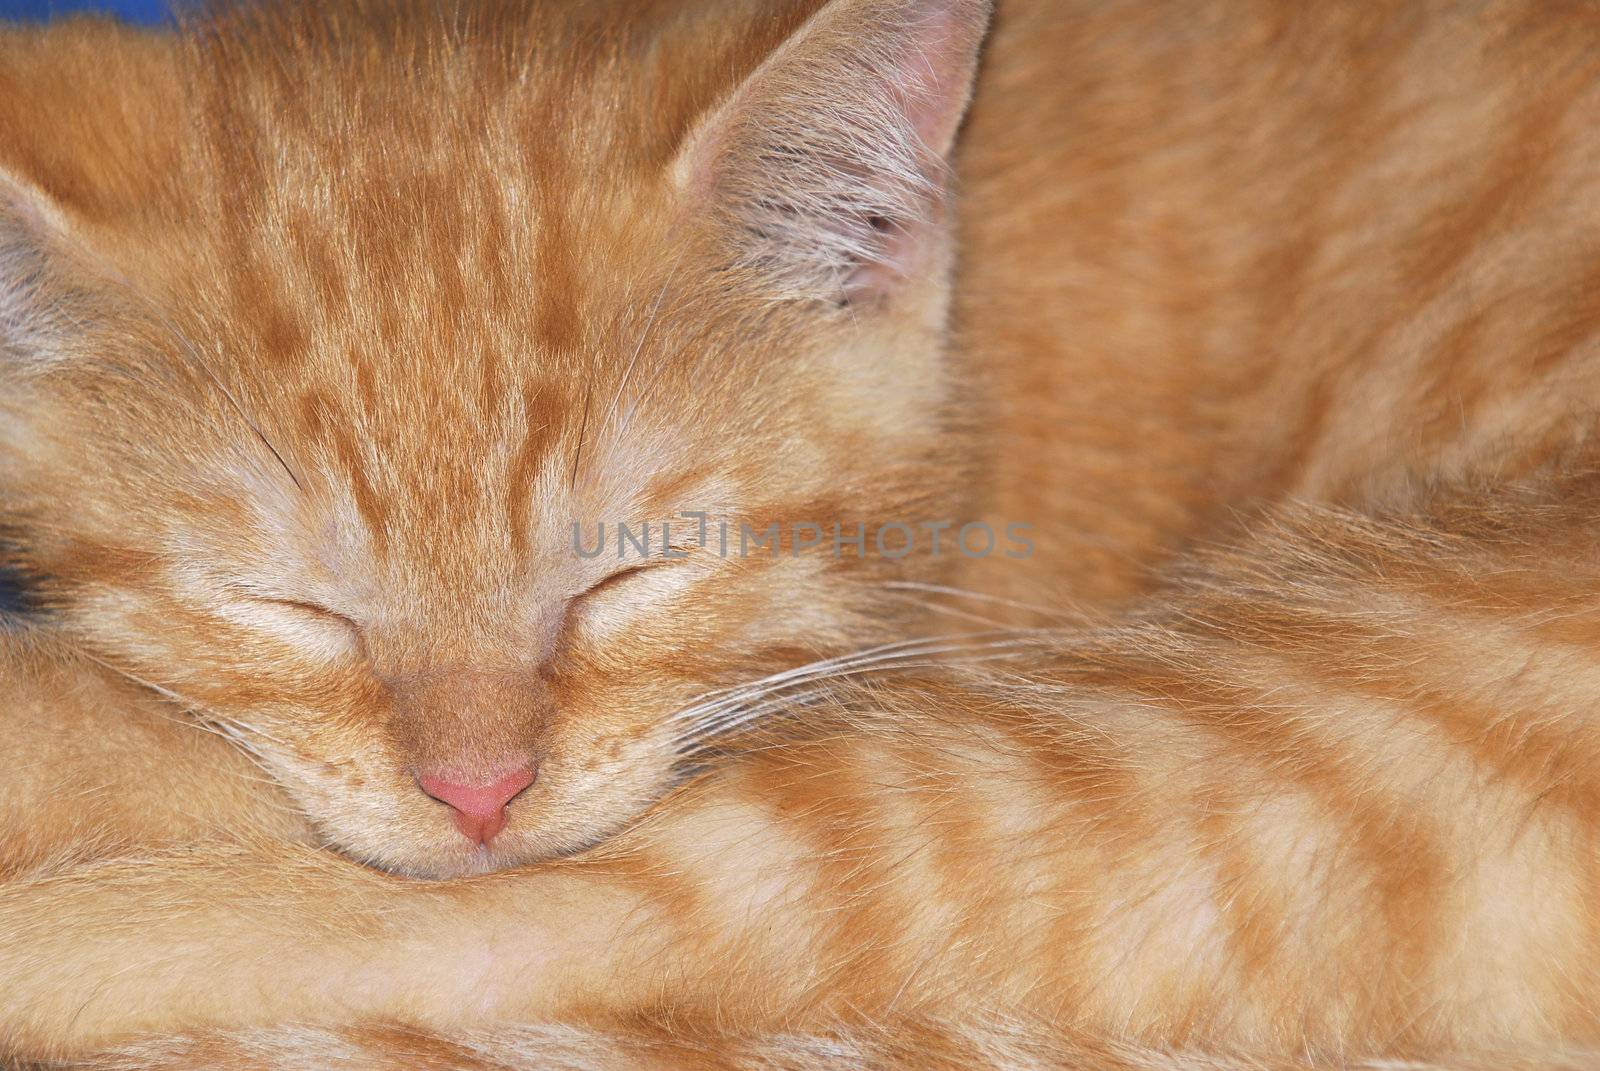 sleeping kitten by willeecole123